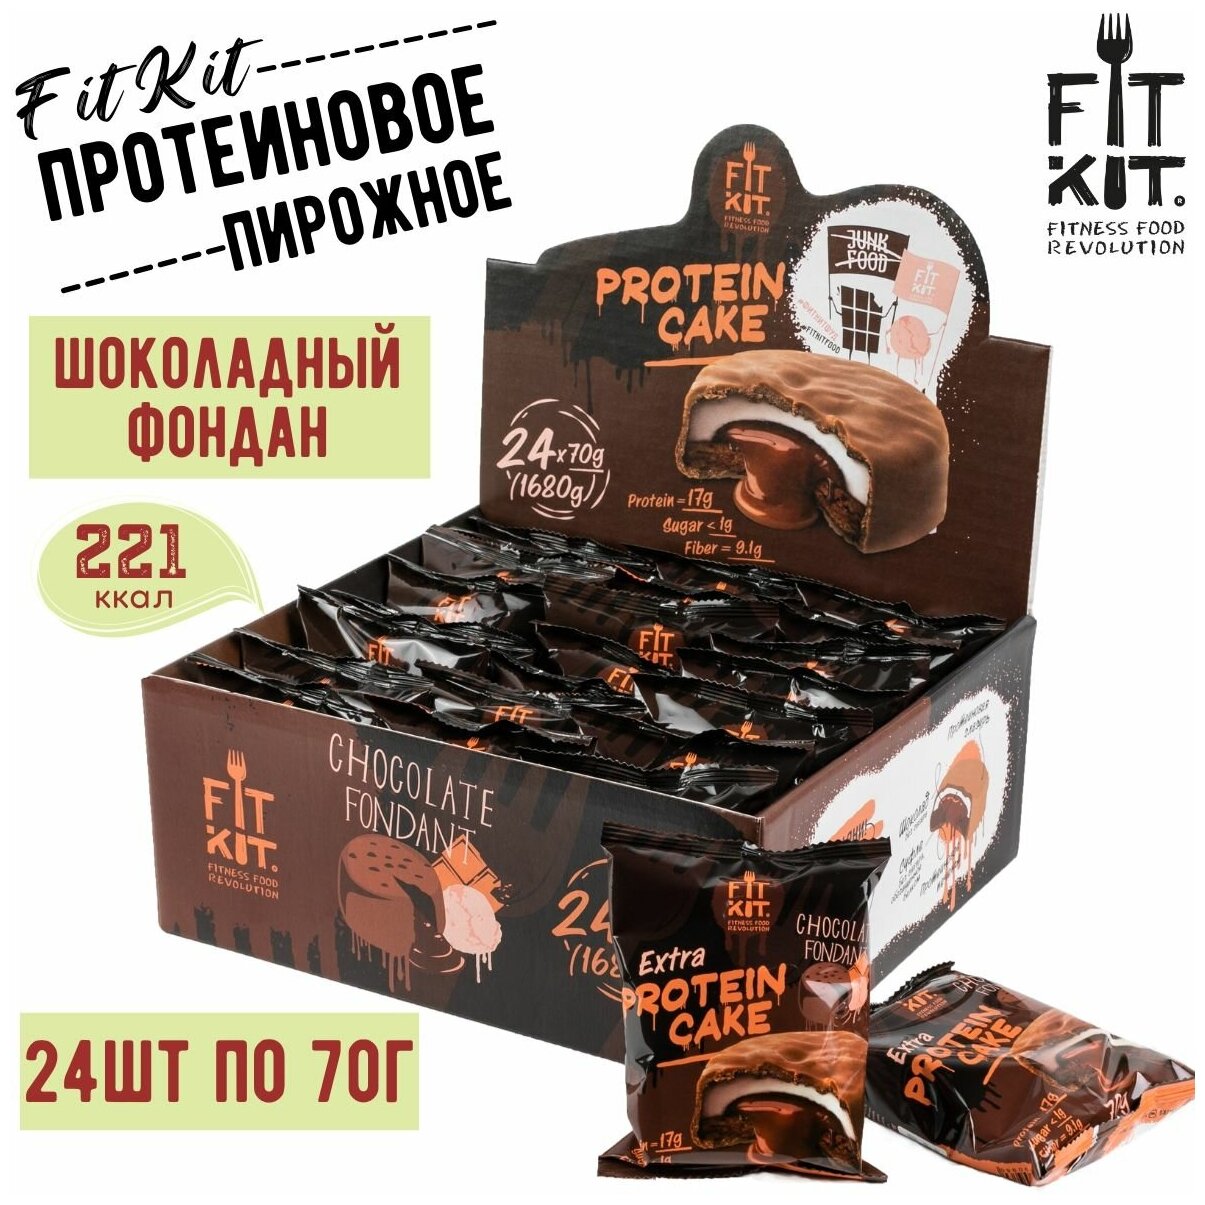 Протеиновое печенье FIT KIT EXTRA Protein Cake Chocolate Fondant "Шоколадный Фондан" 24 штуки по 70 гр , Фит Кит